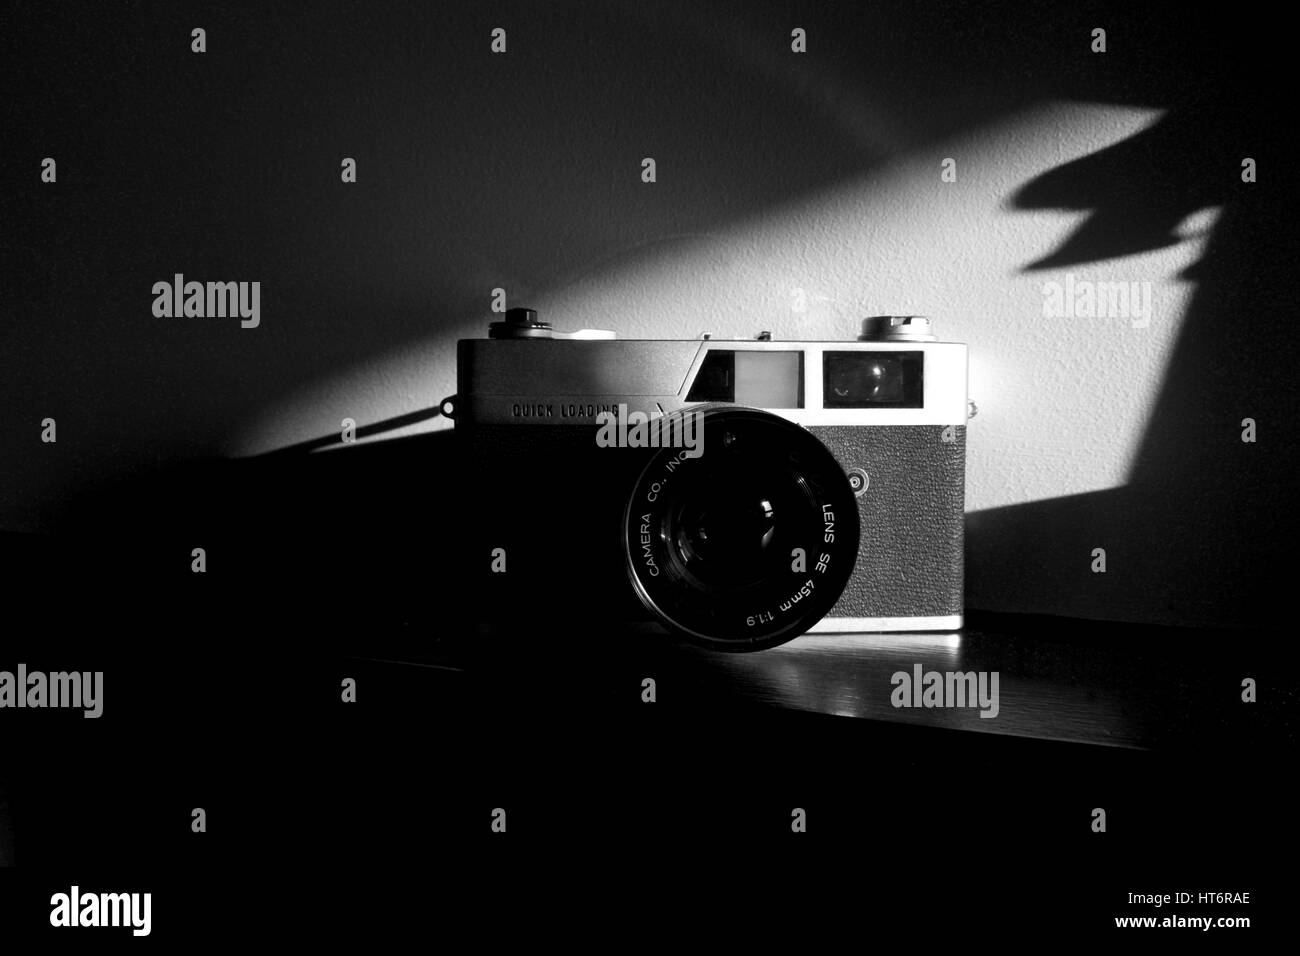 Telecamera cinematografica, retro,35mm Pellicola look vintage, fotografia in bianco e nero, studio fotografico Foto Stock